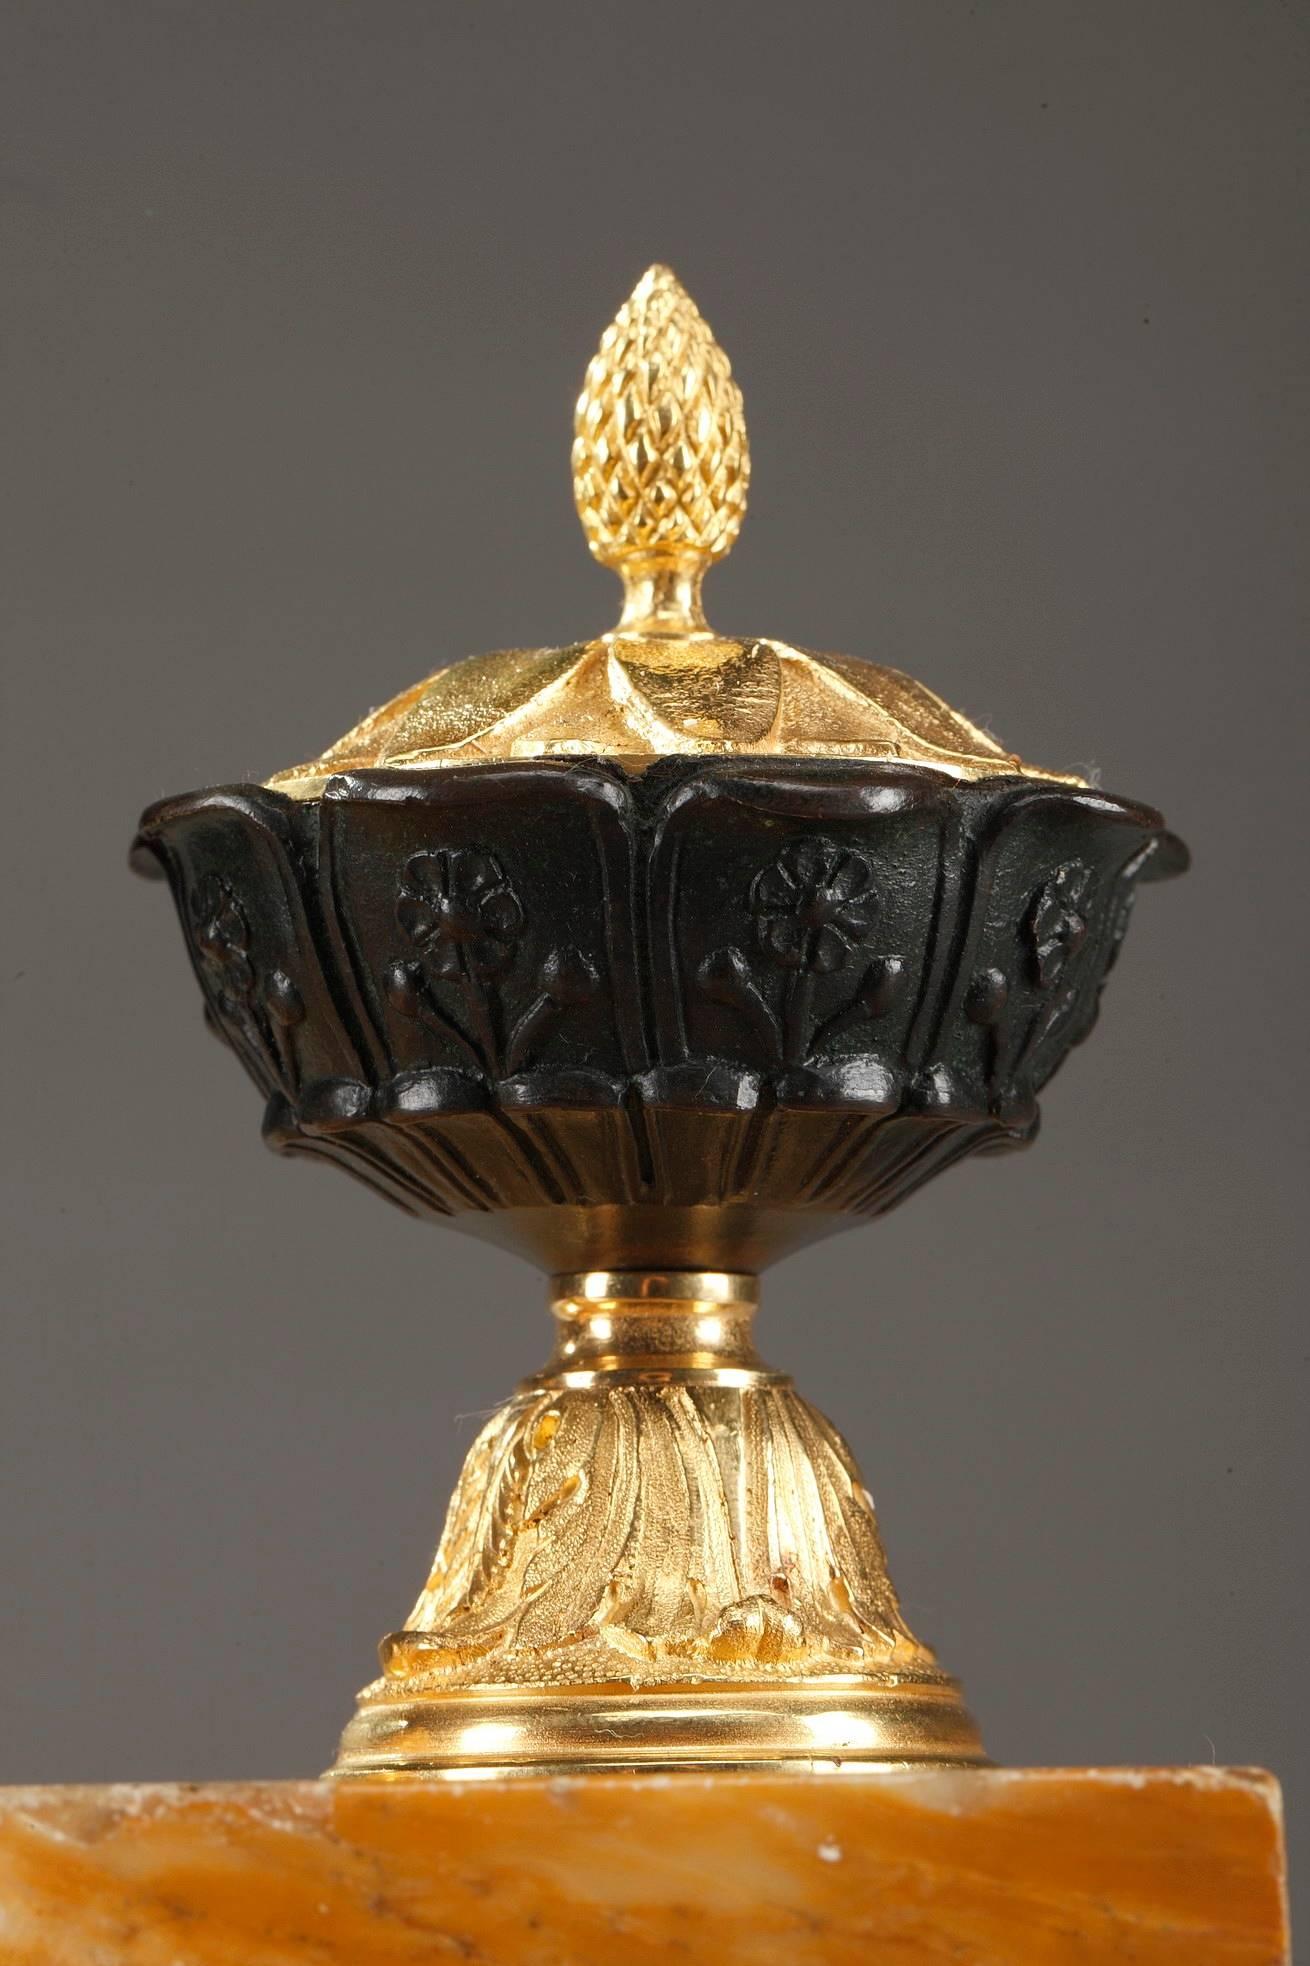 Tintenfass aus dem 19. Jahrhundert mit drei Gefäßen aus patinierter Bronze, die als Tintenfässer dienen. Sie sind mit Akanthusblättern und kleinen Blumen verziert. Die abnehmbaren Deckel aus Ormolu werden von einem Kieferknauf gekrönt, der als